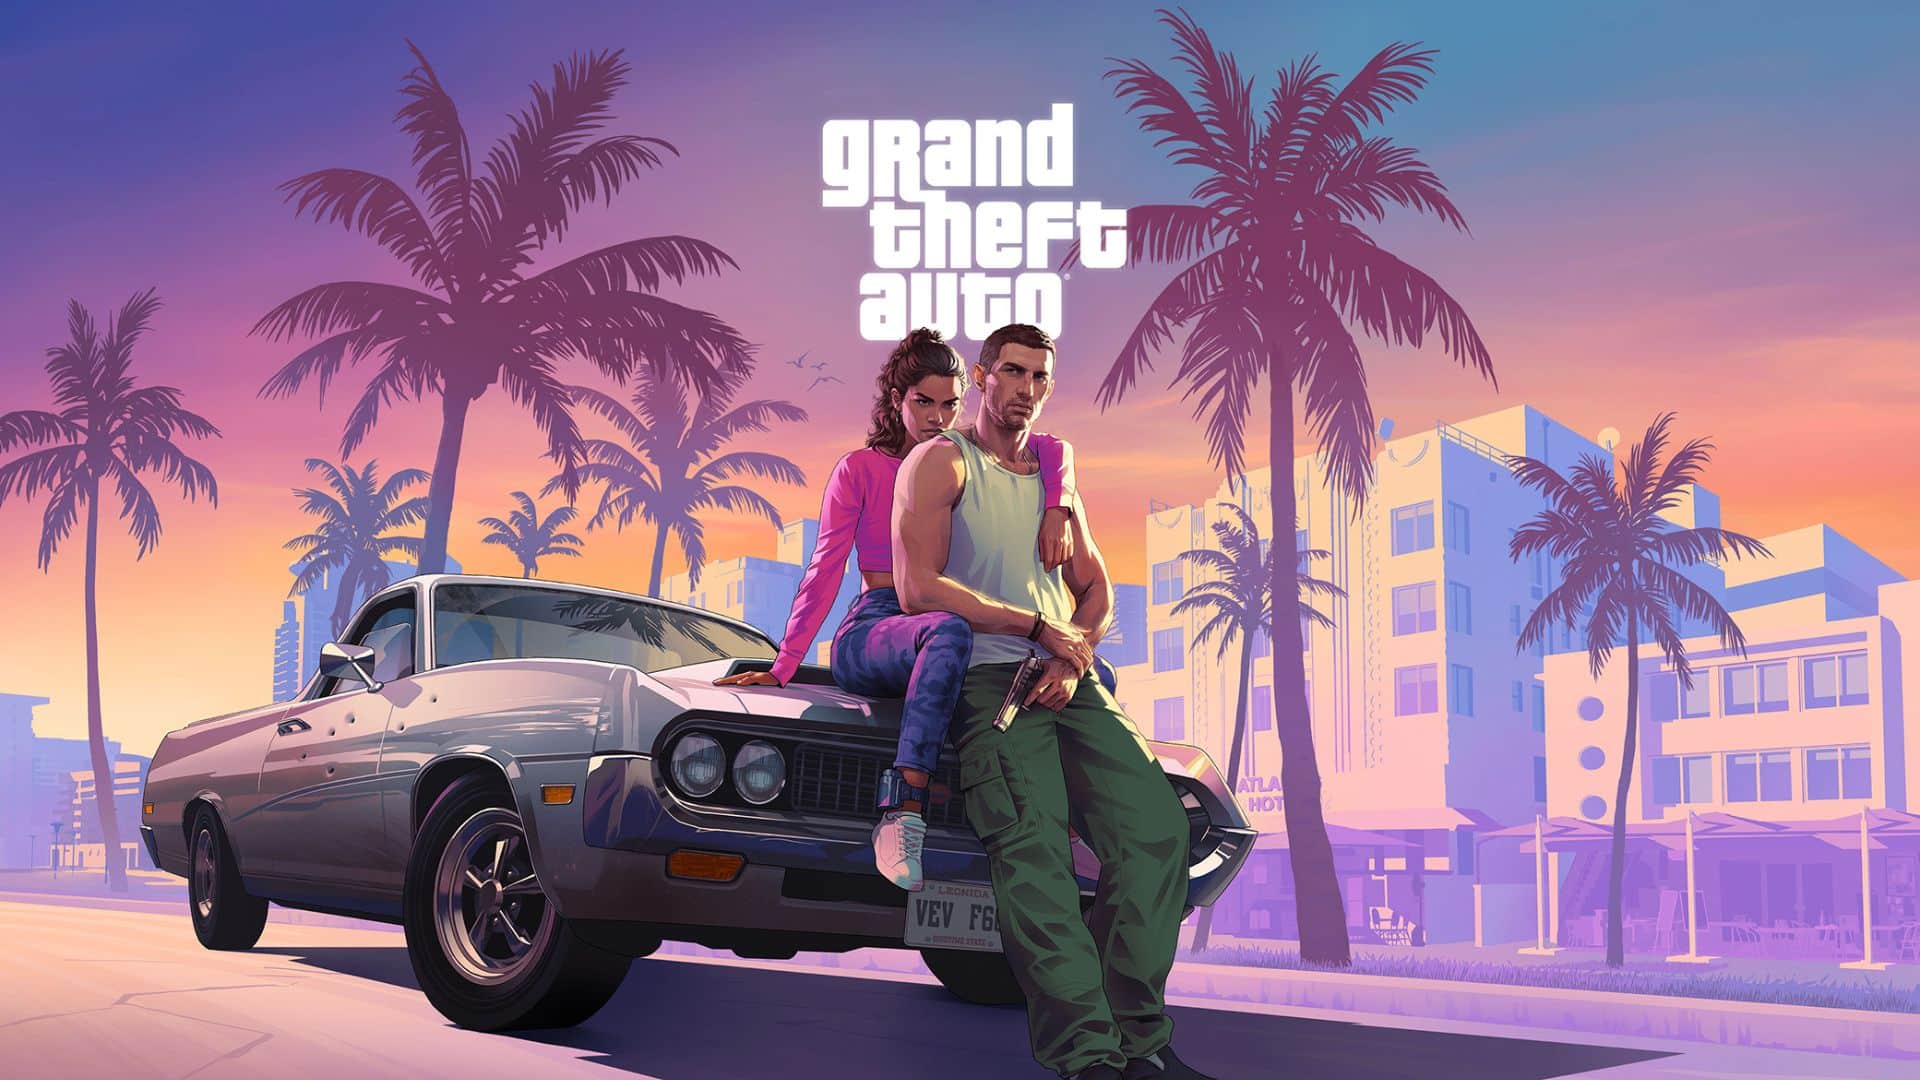 Vers un report de Grand Theft Auto VI en 2026 ?